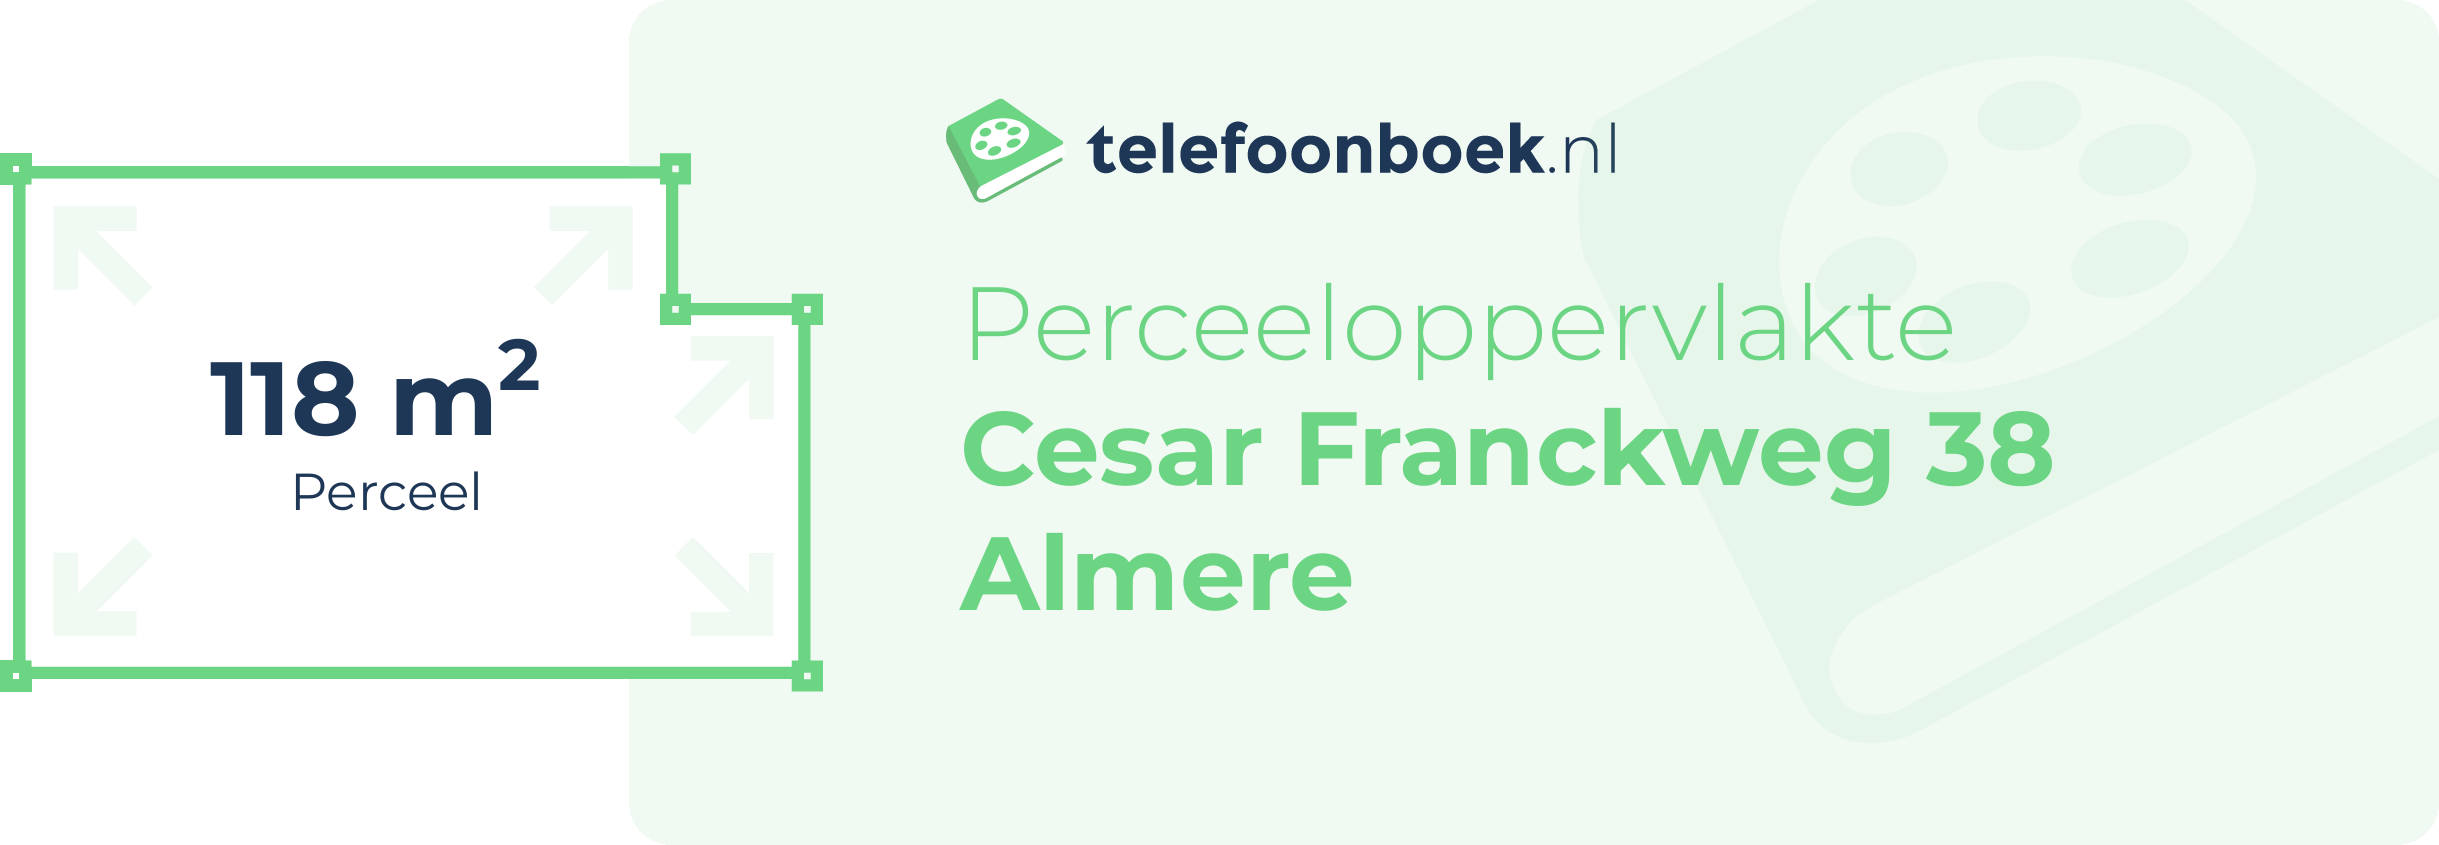 Perceeloppervlakte Cesar Franckweg 38 Almere